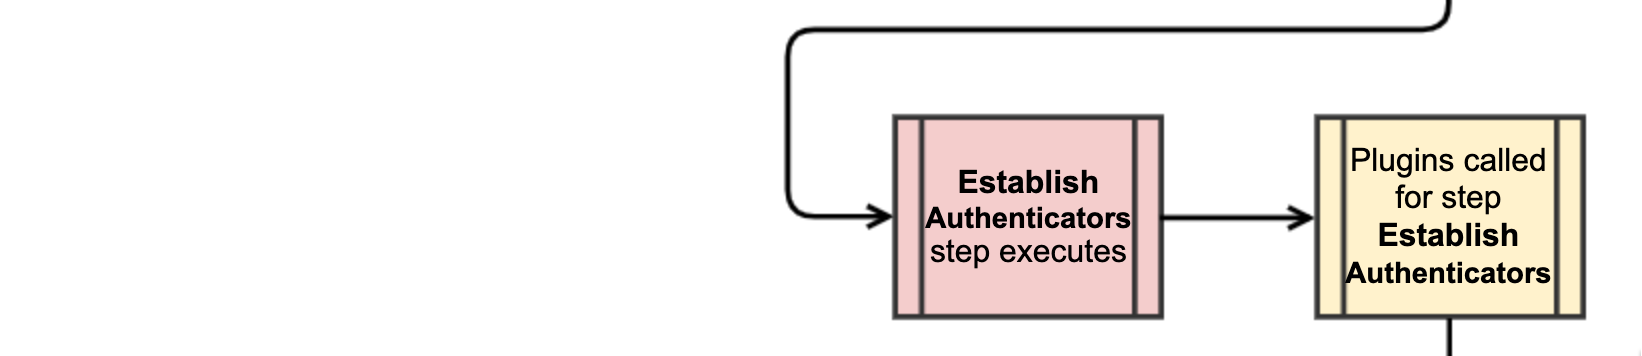 Step 9. Establish Authenticators Flow diagram